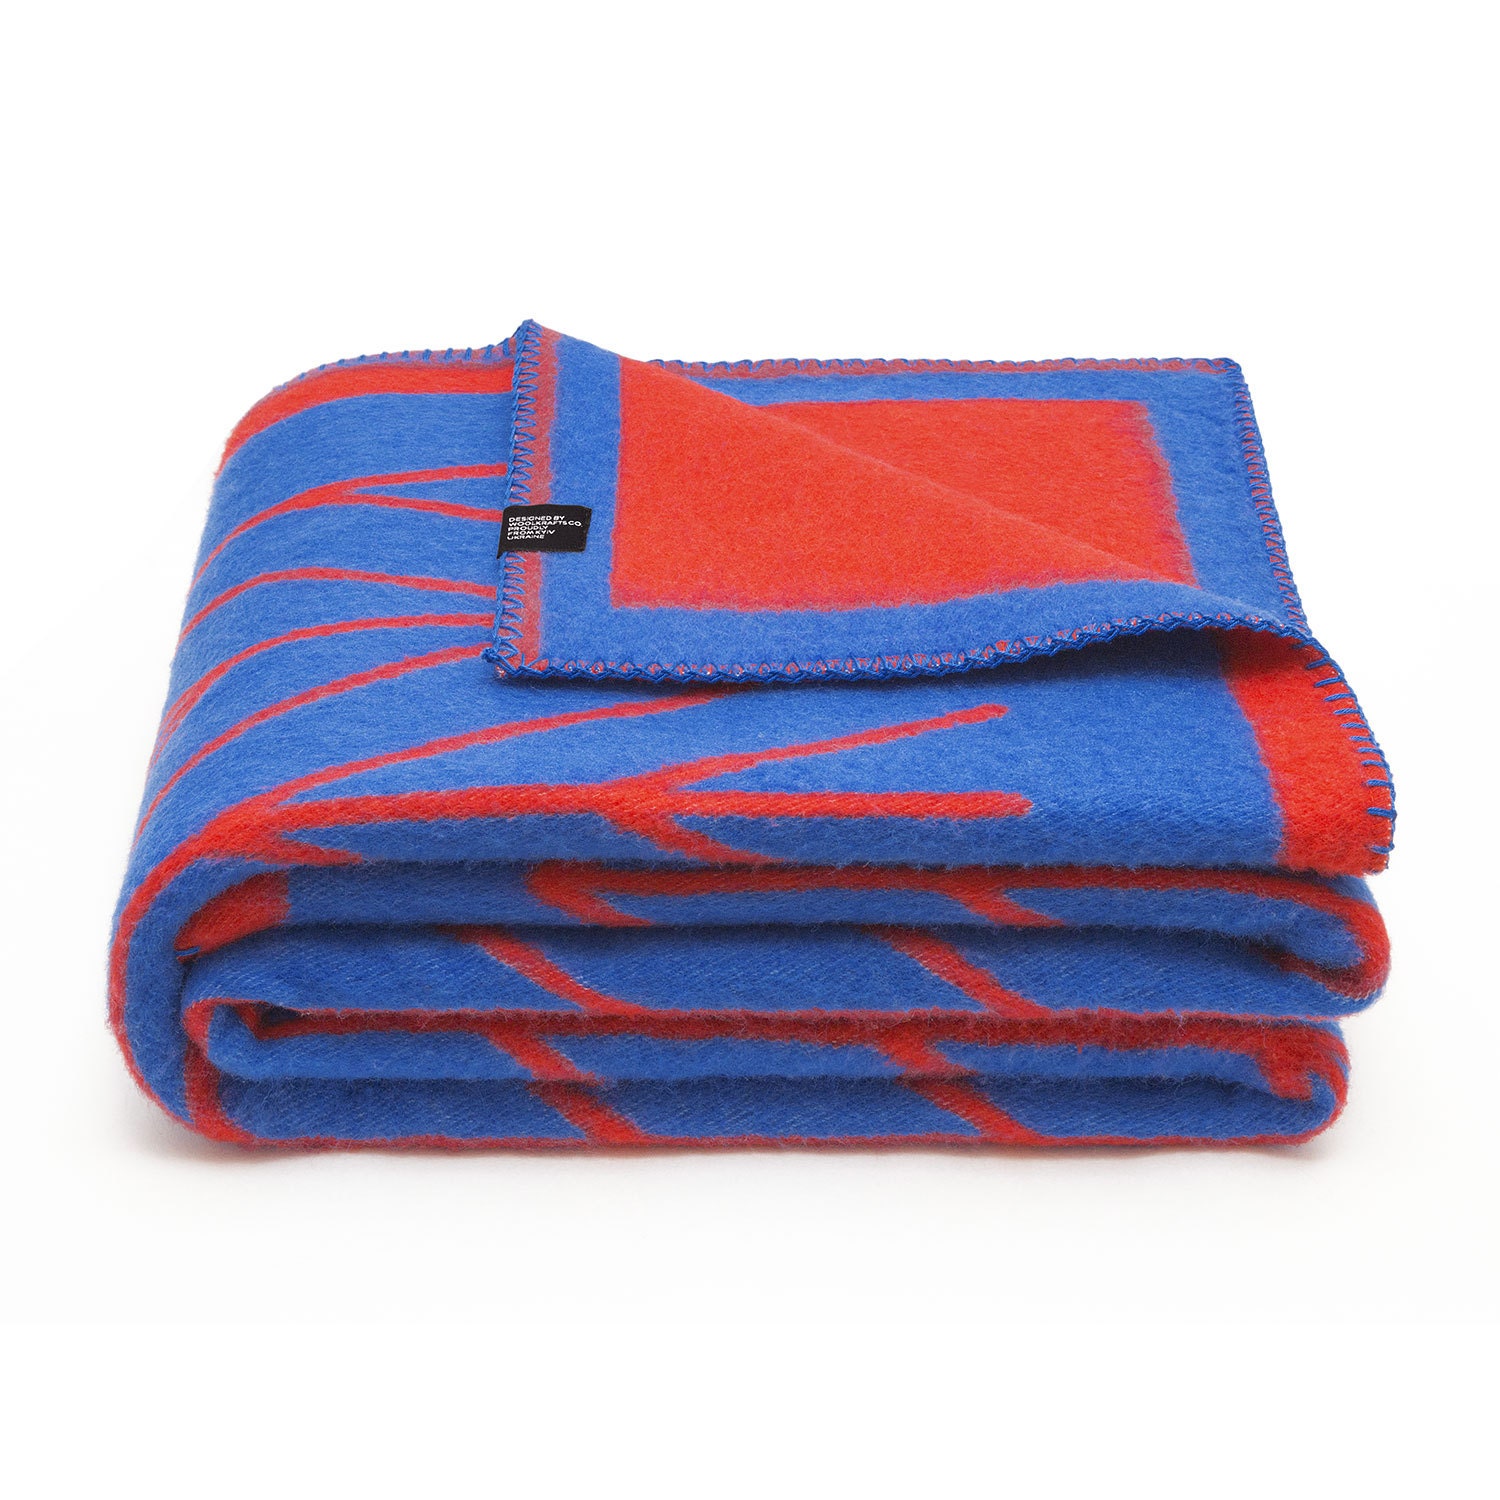 100% Merino Wool Blanket Blue/red Handmade Throw by MyFacturyHub